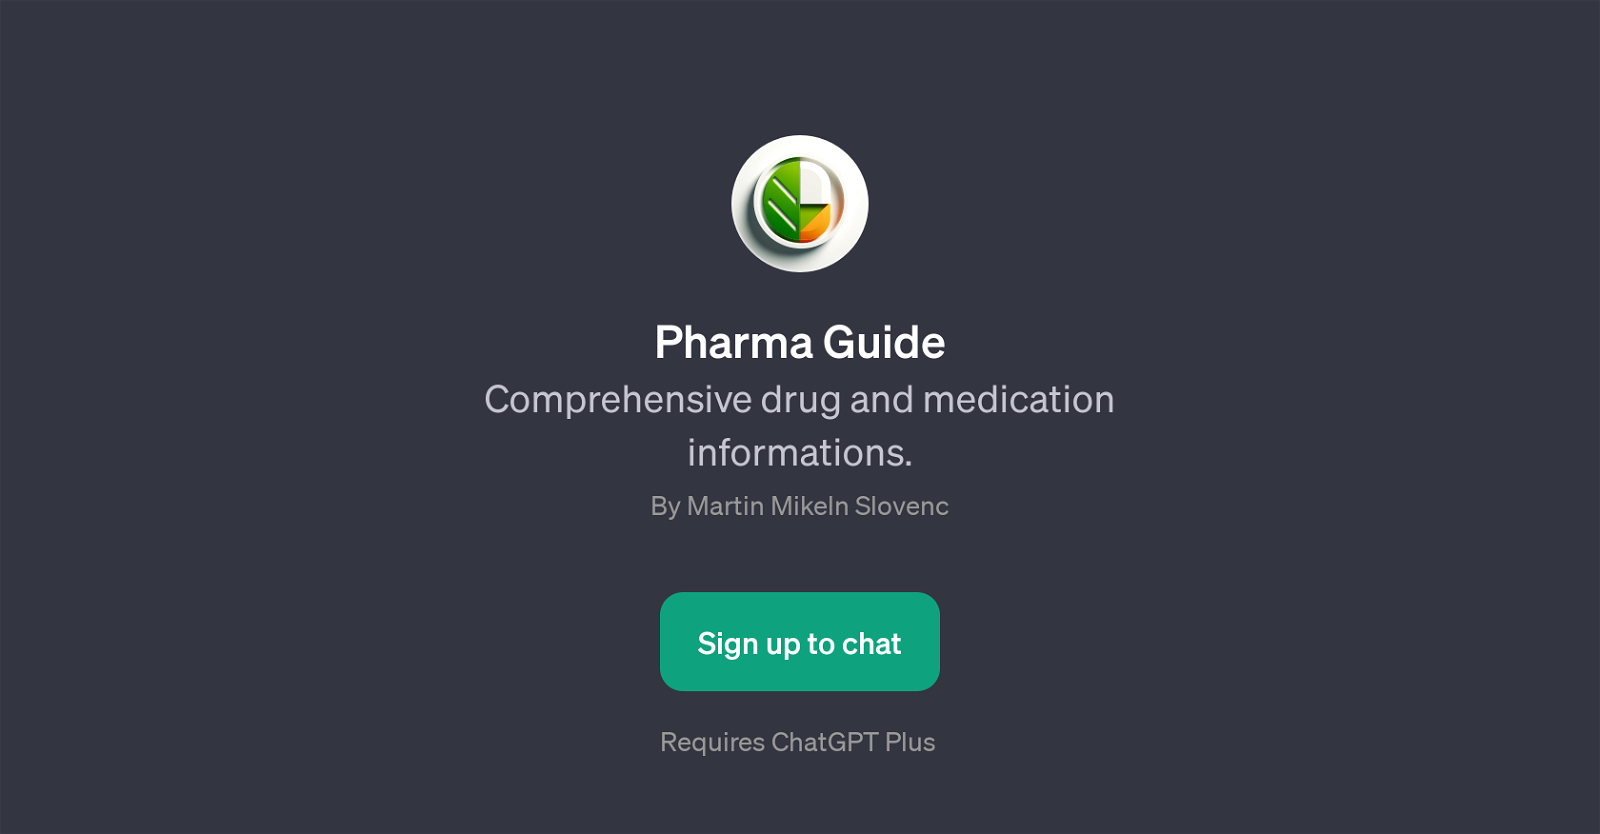 Pharma Guide website